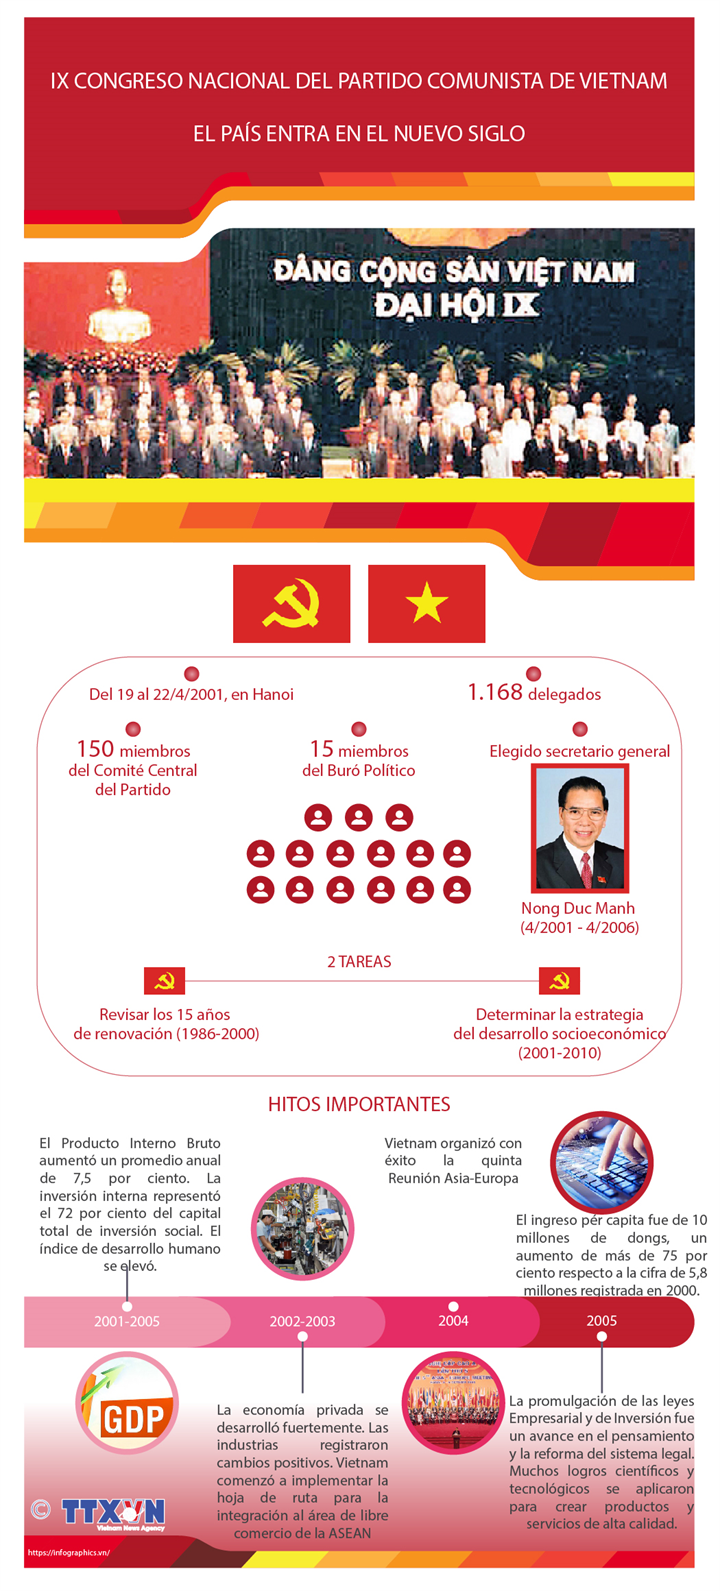 El IX Congreso Nacional del Partido Comunista de Vietnam: El país entra en el nuevo siglo